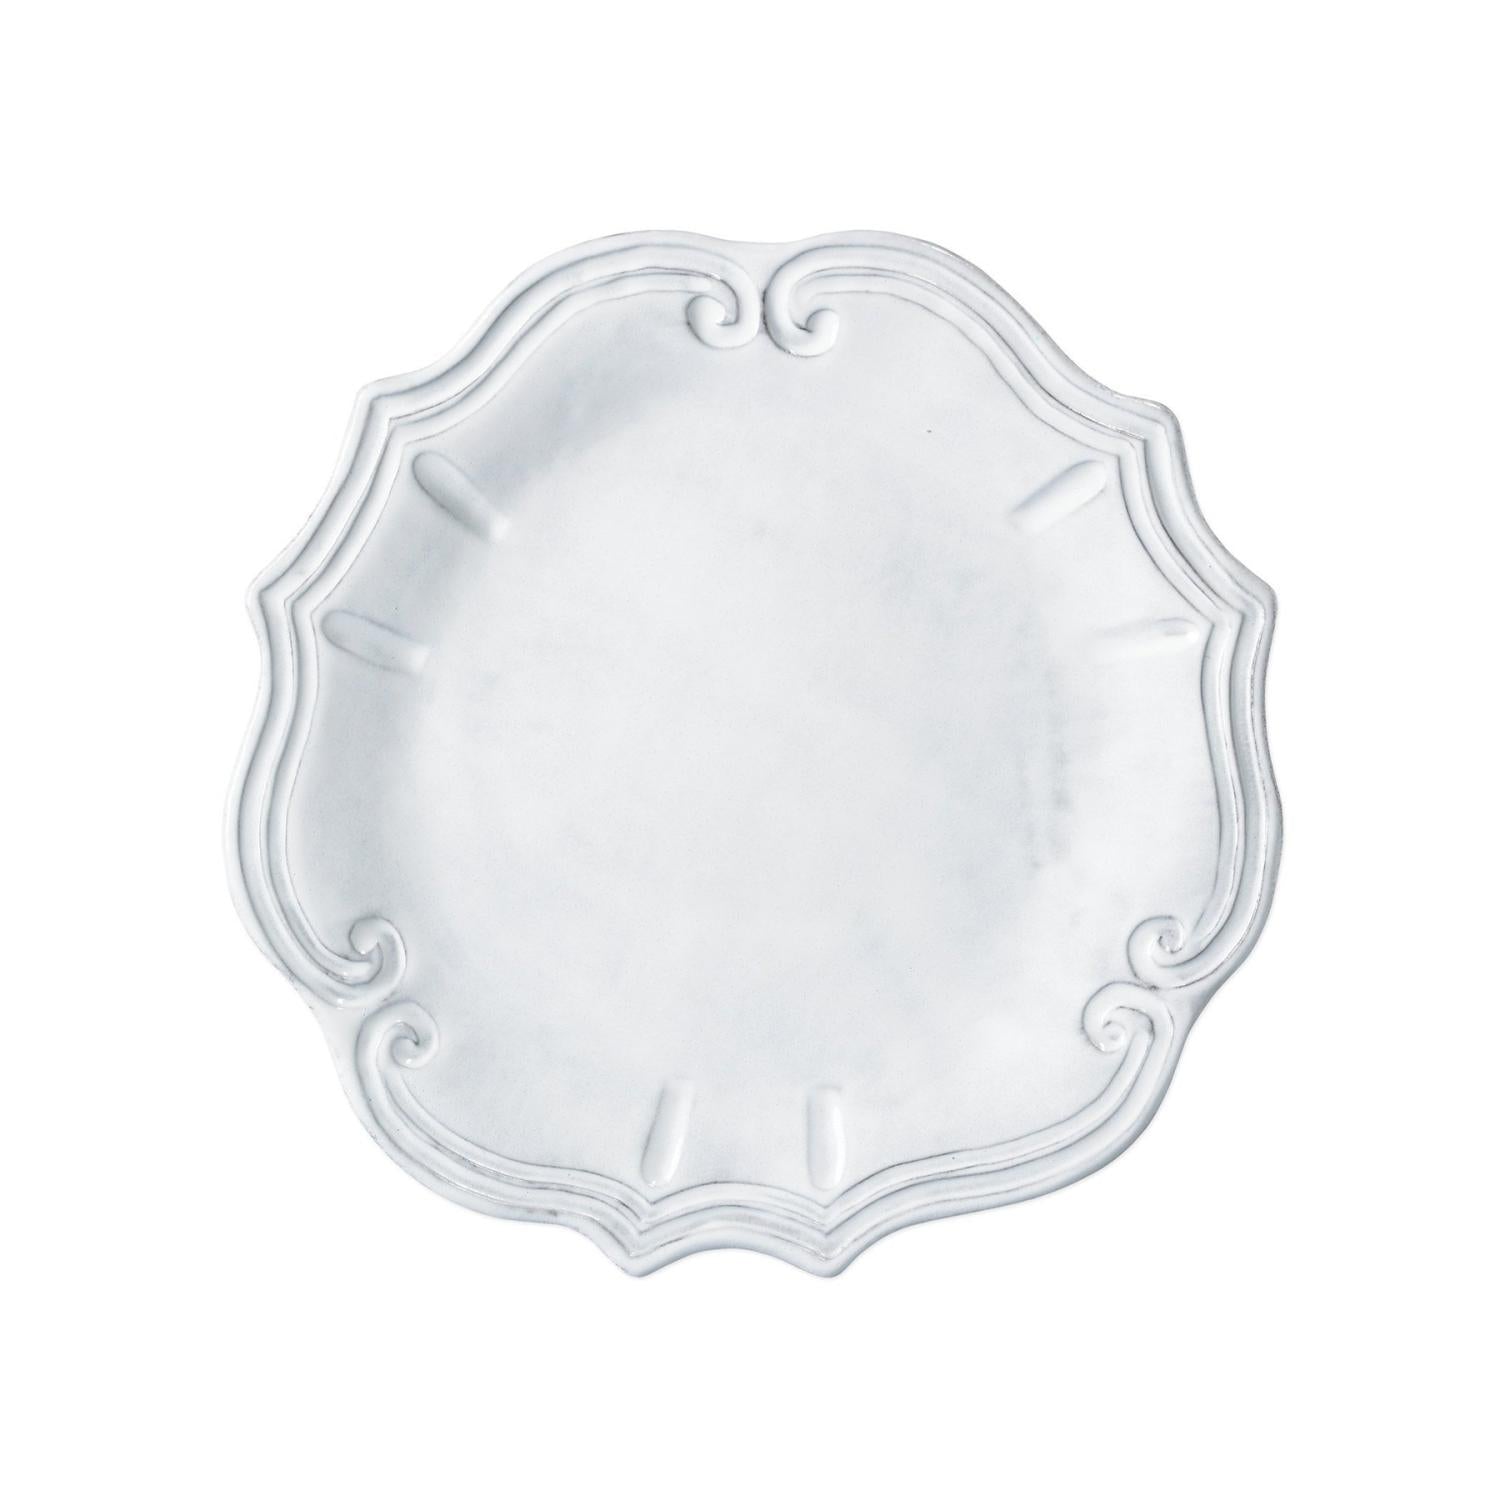 Baroque Dinner Plate - White